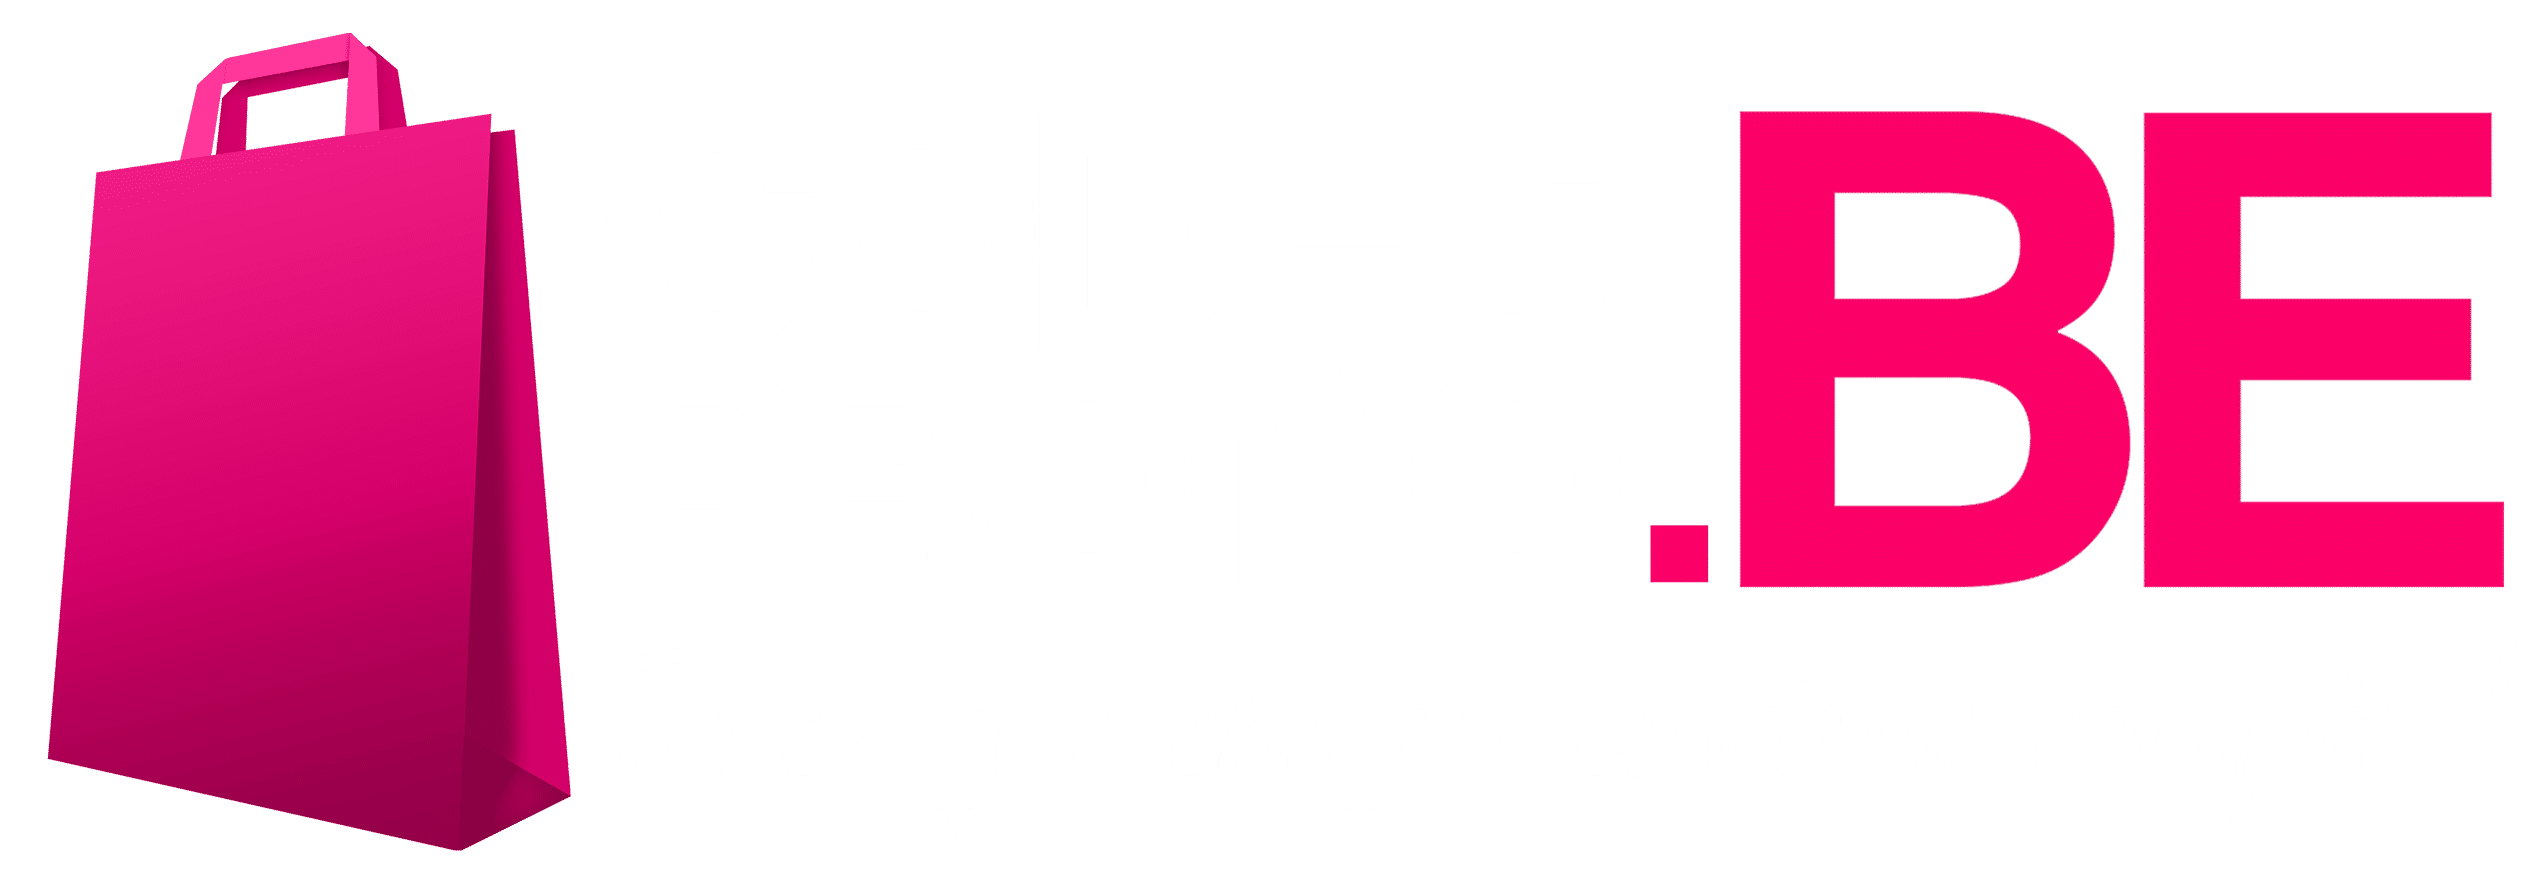 Codes Promo Logo